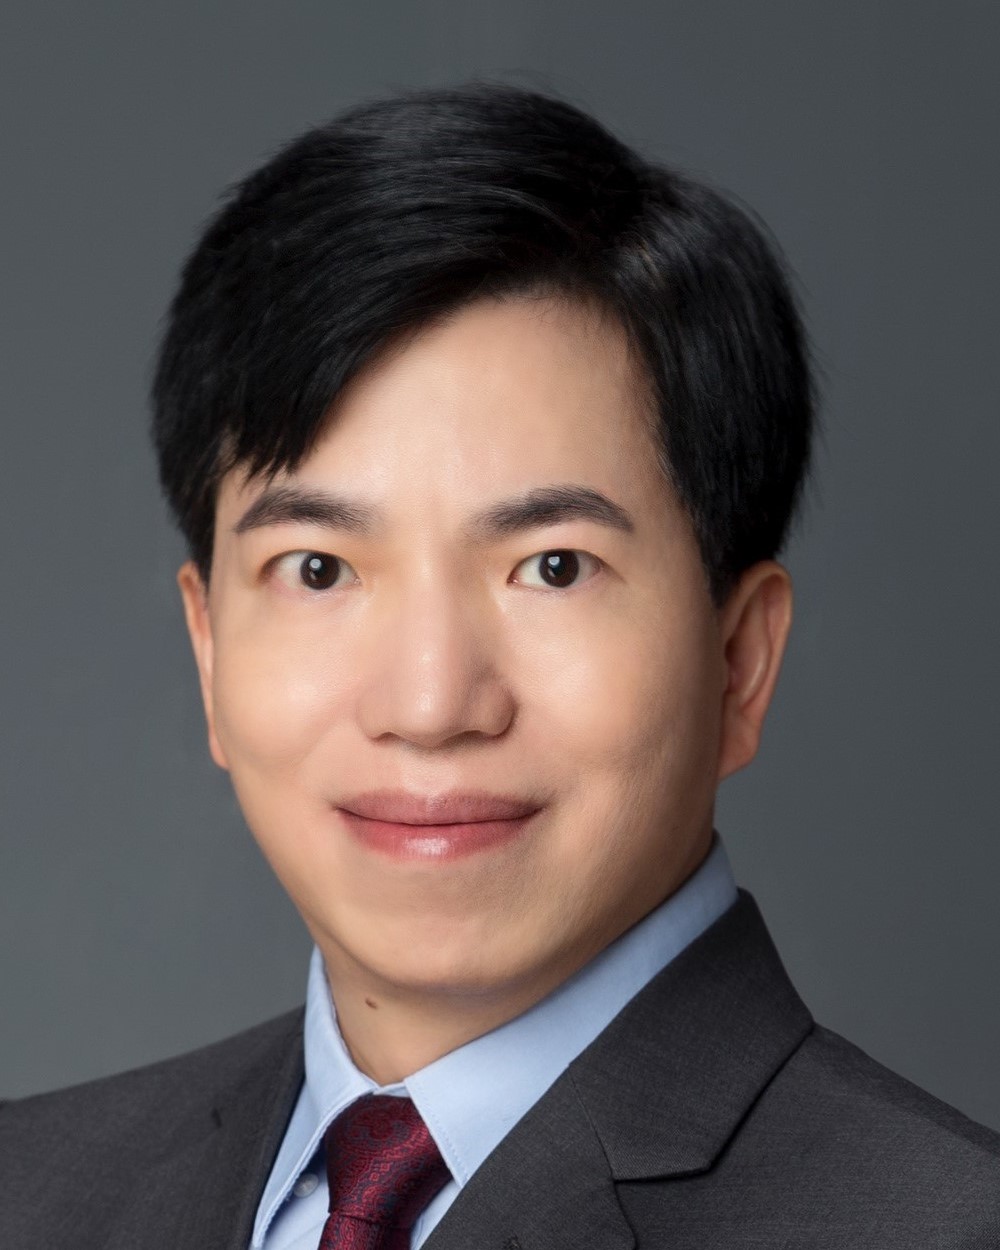 Dr. William C. Cho